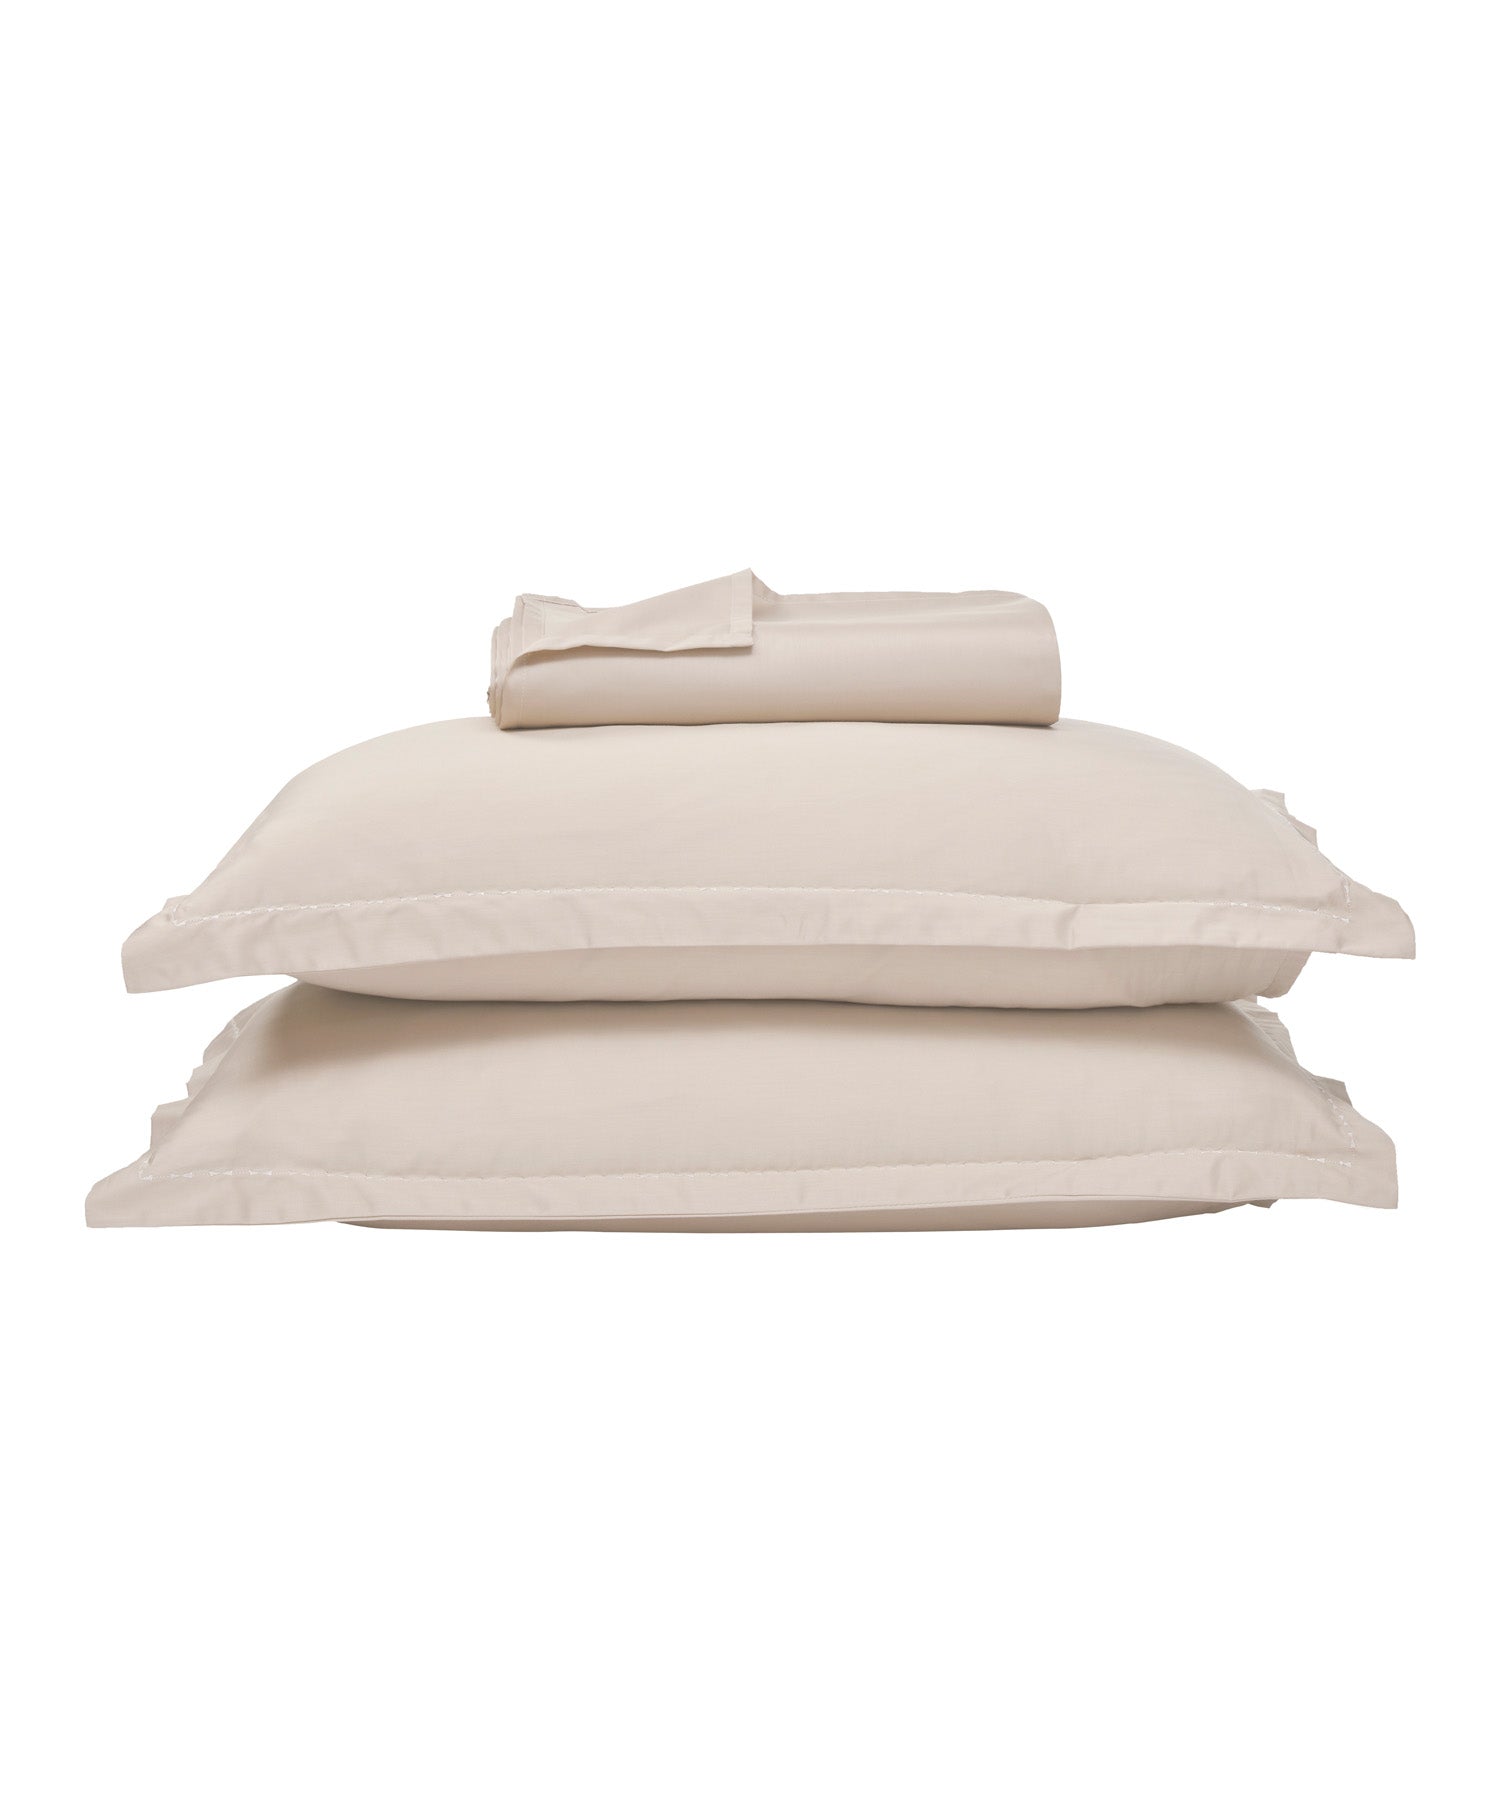 300 TC, Indulgence Thermal Comfort Bedsheet Set, SNOWFALL WHITE